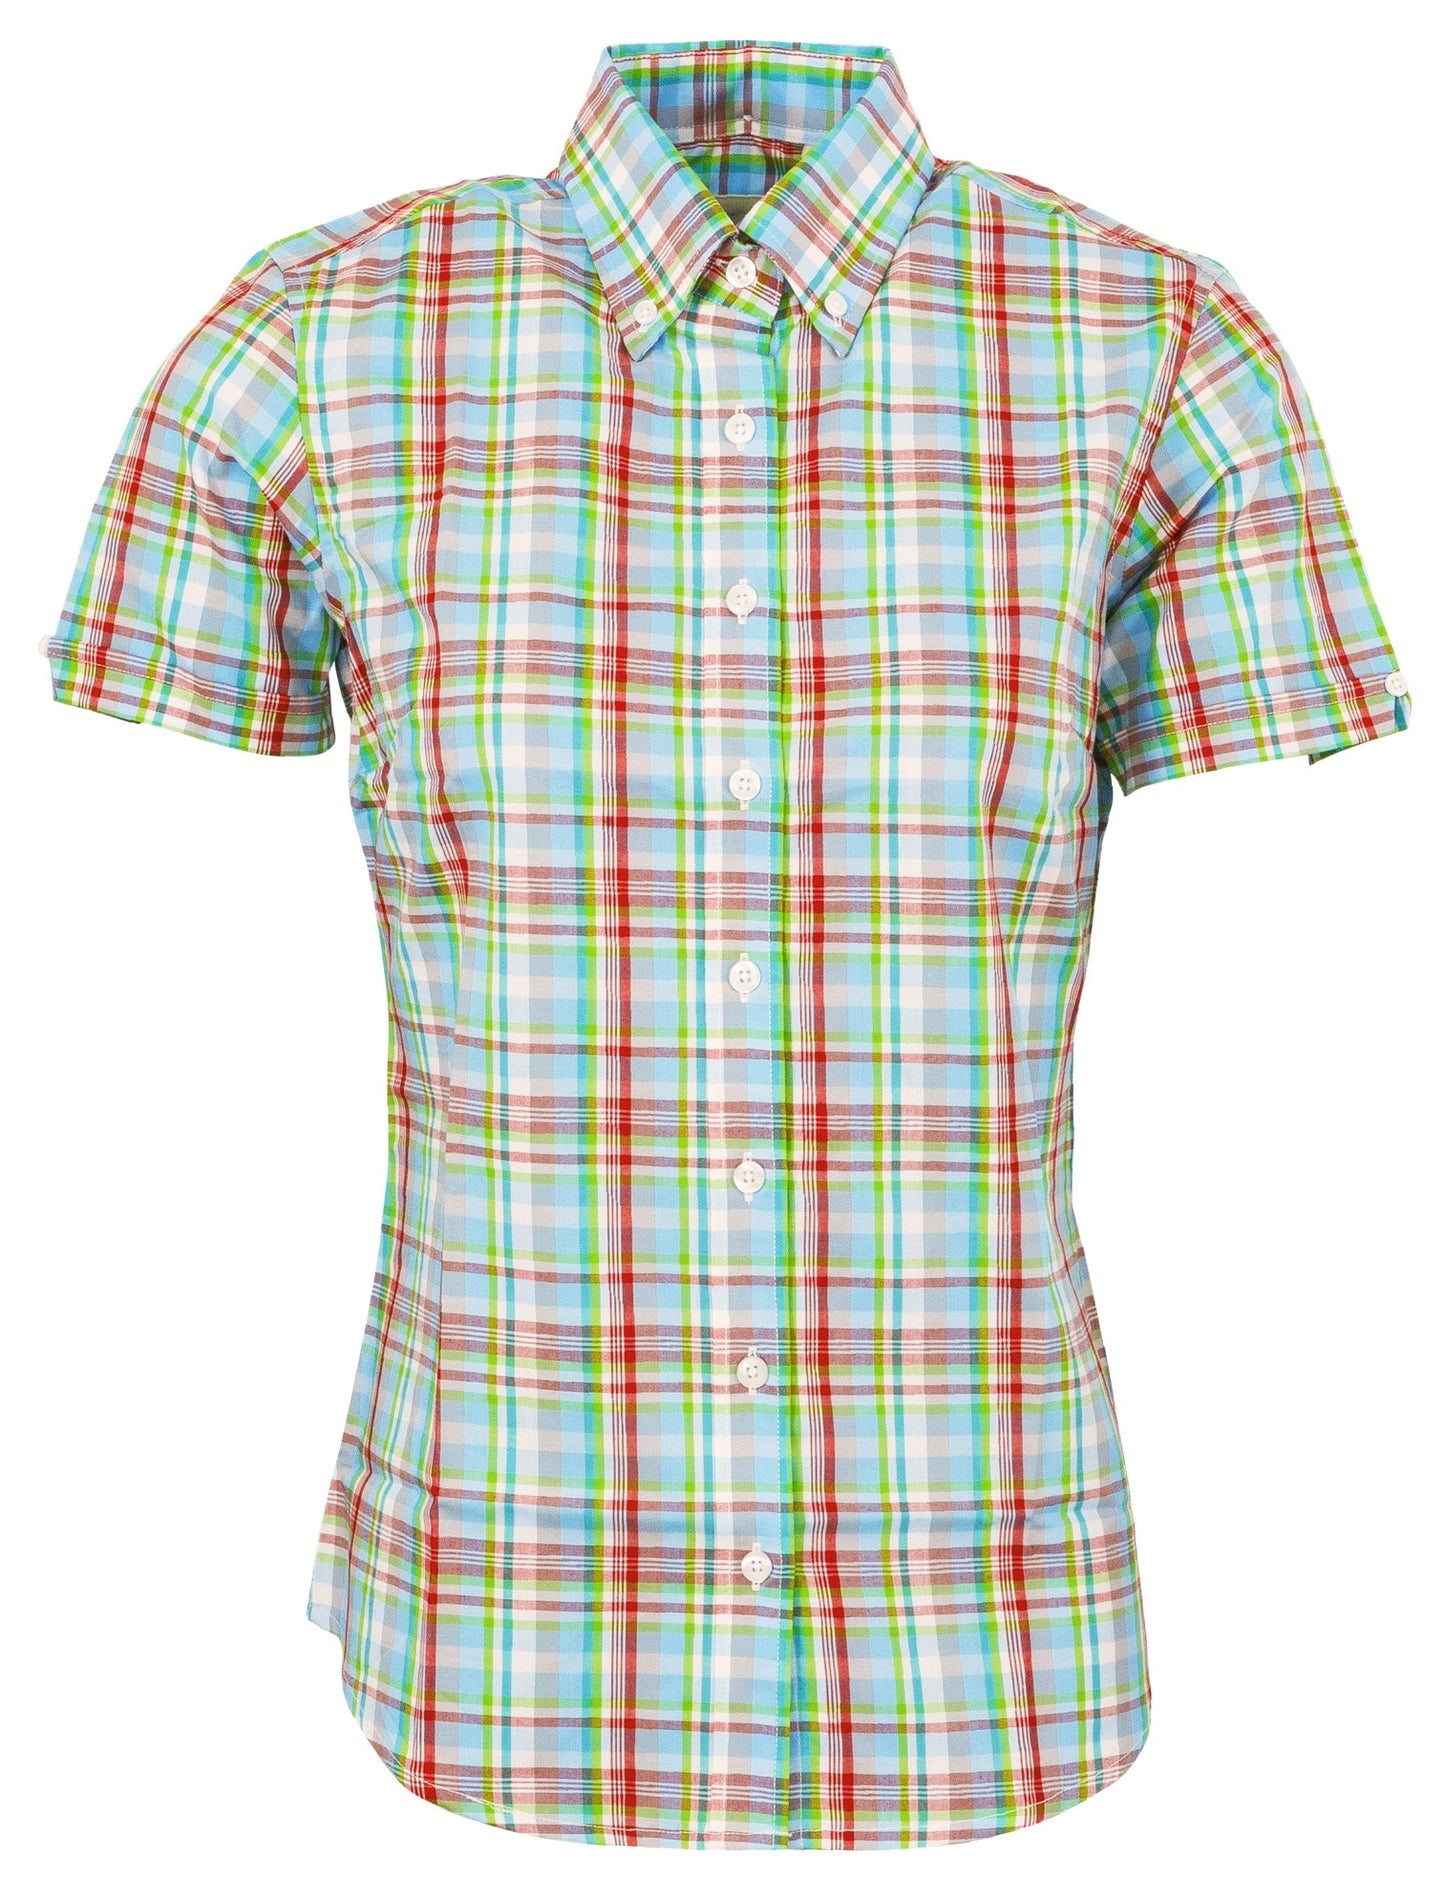 Camisas de manga corta con botones a cuadros retro multicolor de mujer Relco